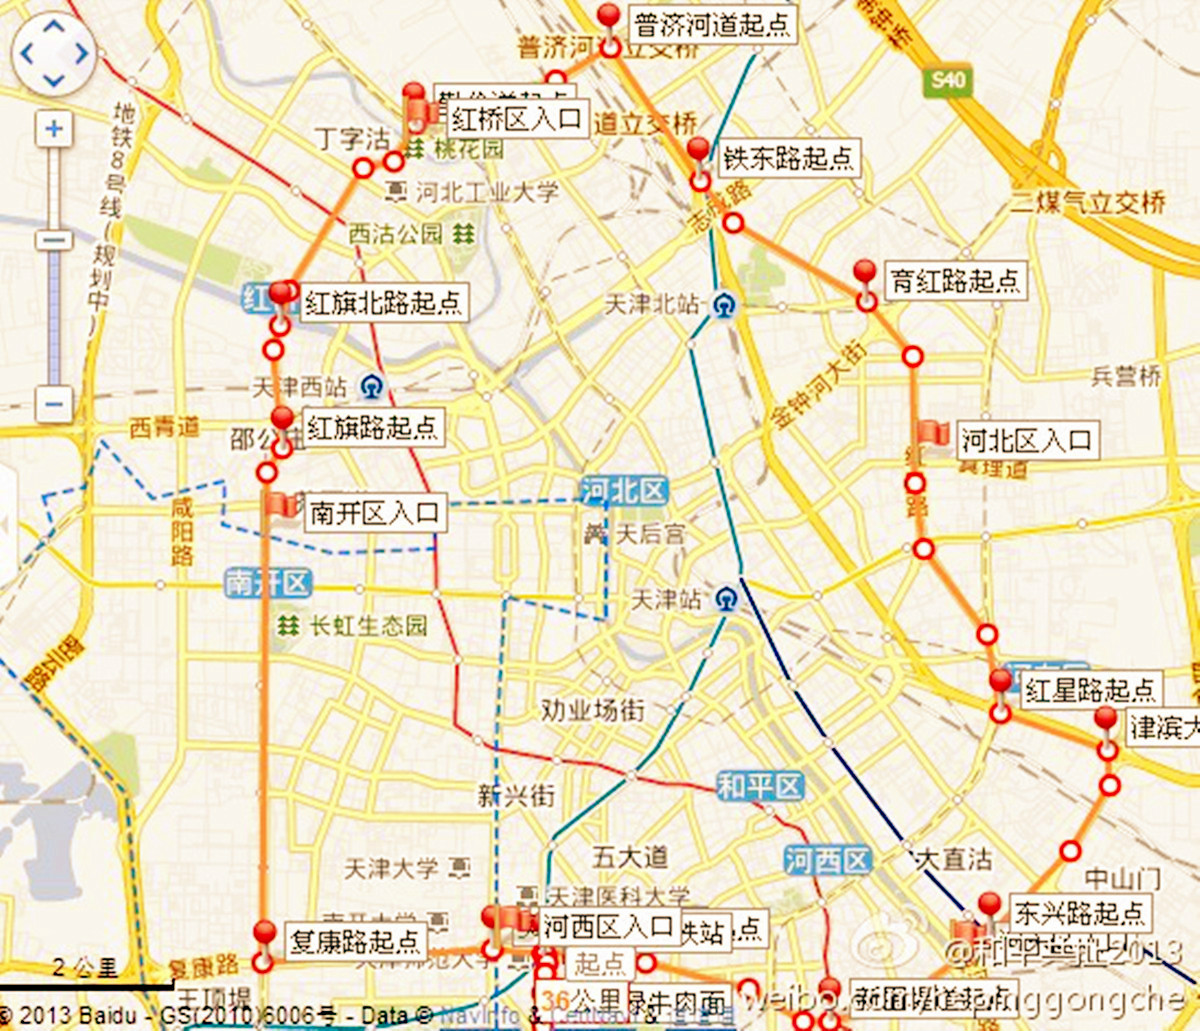 天津中環線節點圖示